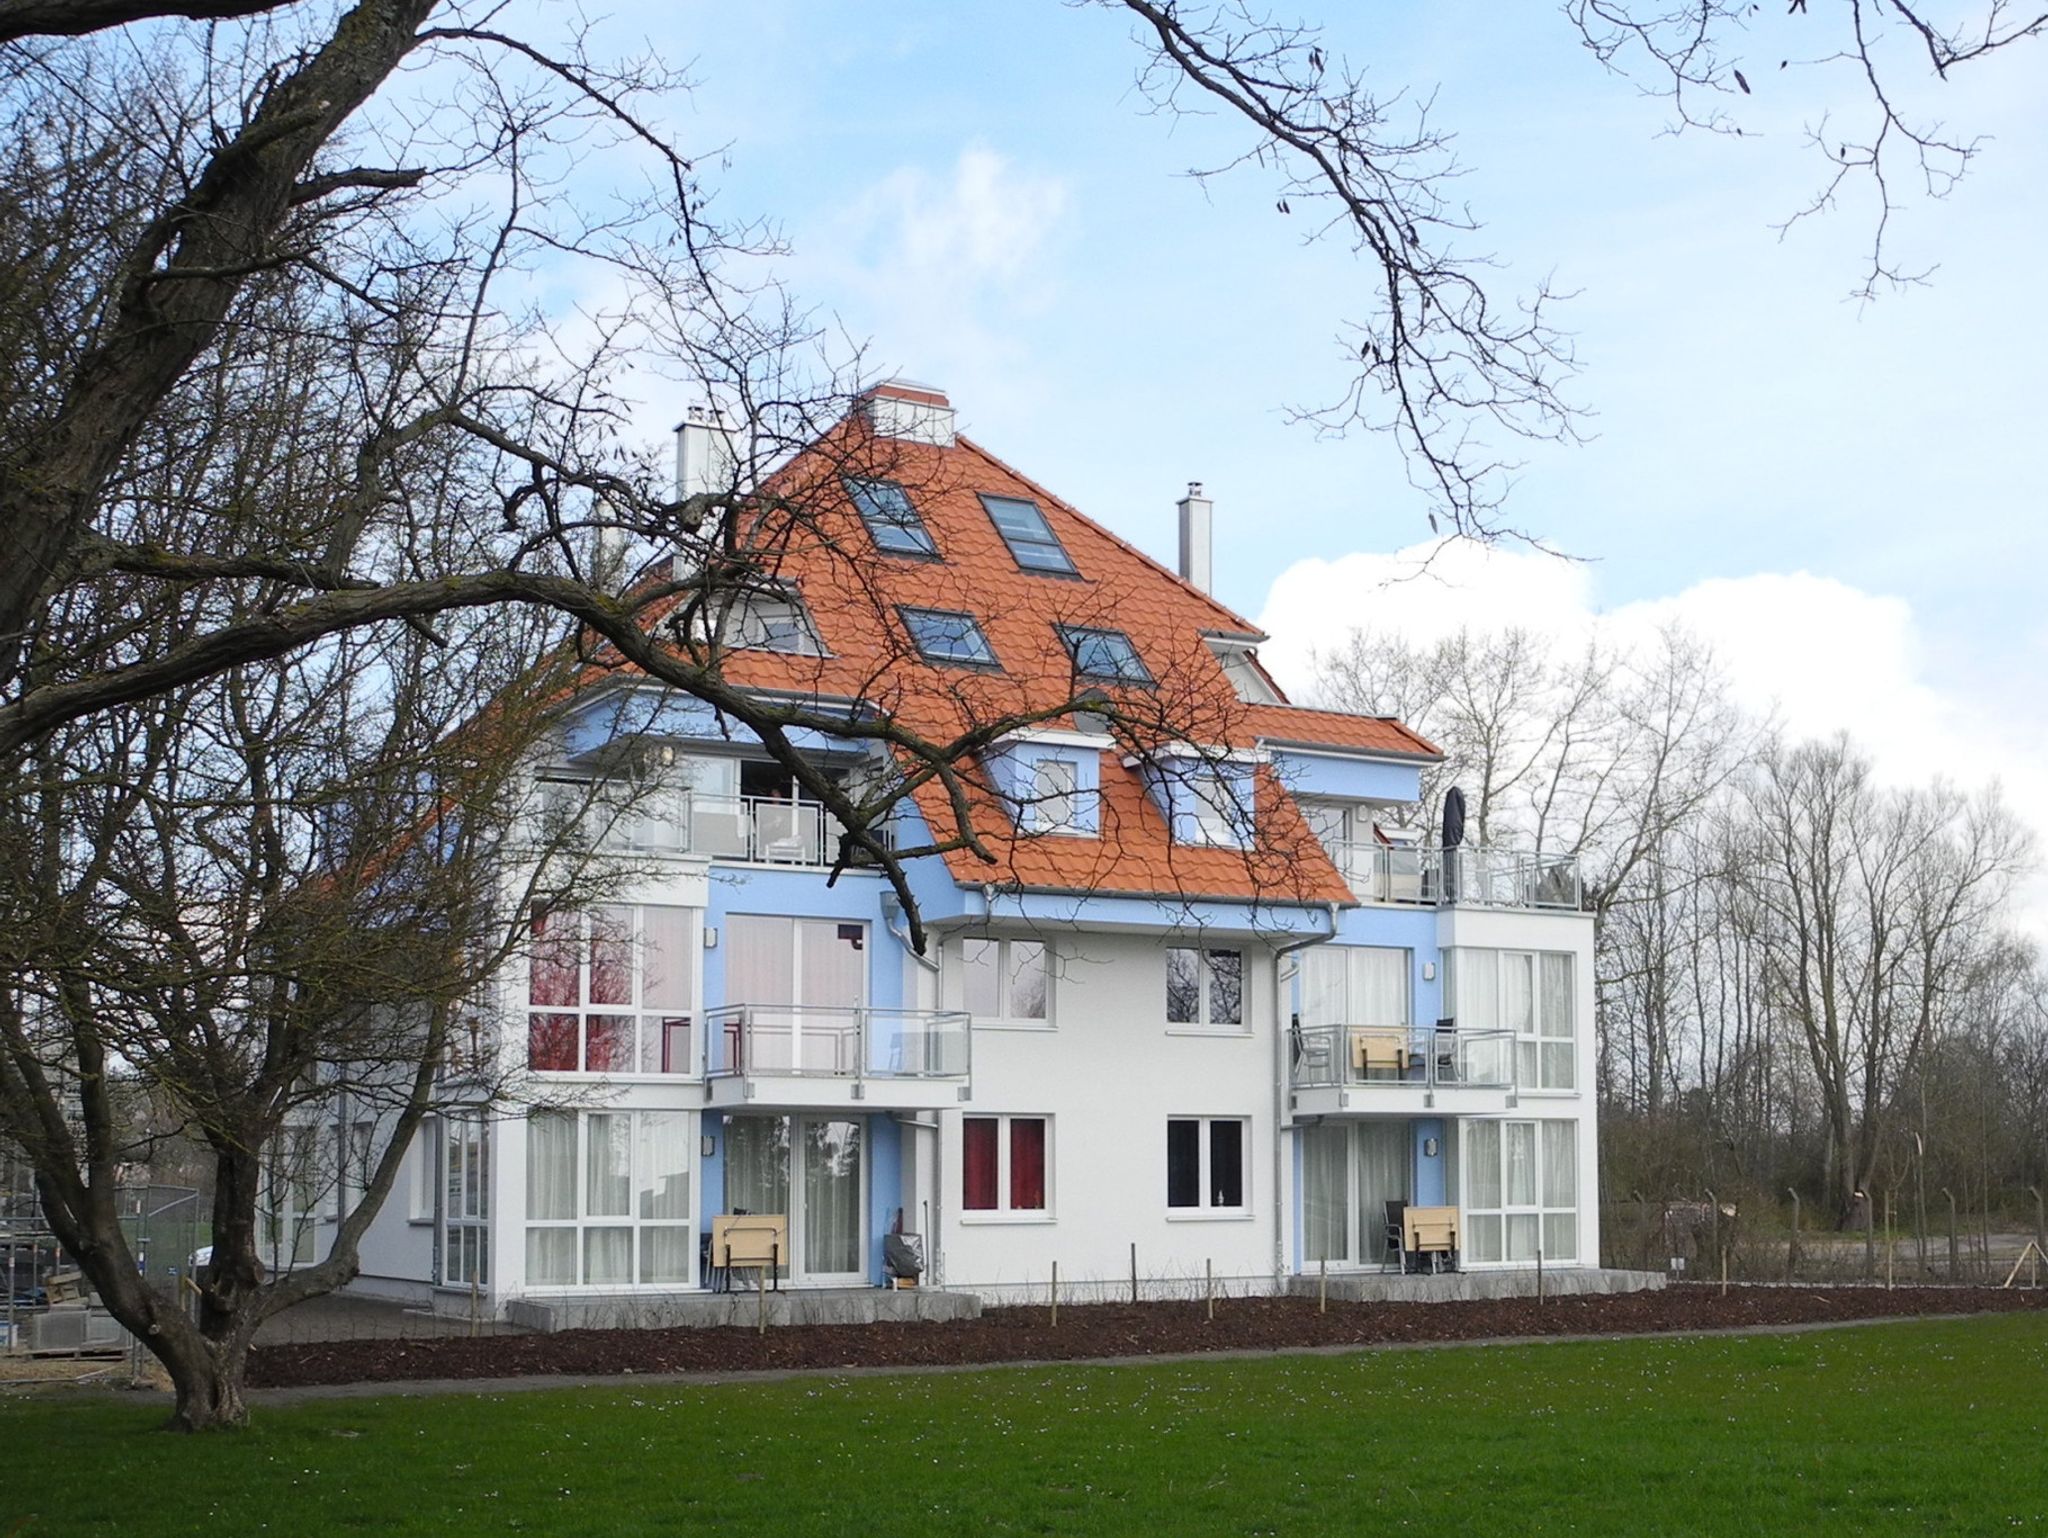 Ferienhaus in Neukirchen mit Grill, Terrasse und Garten